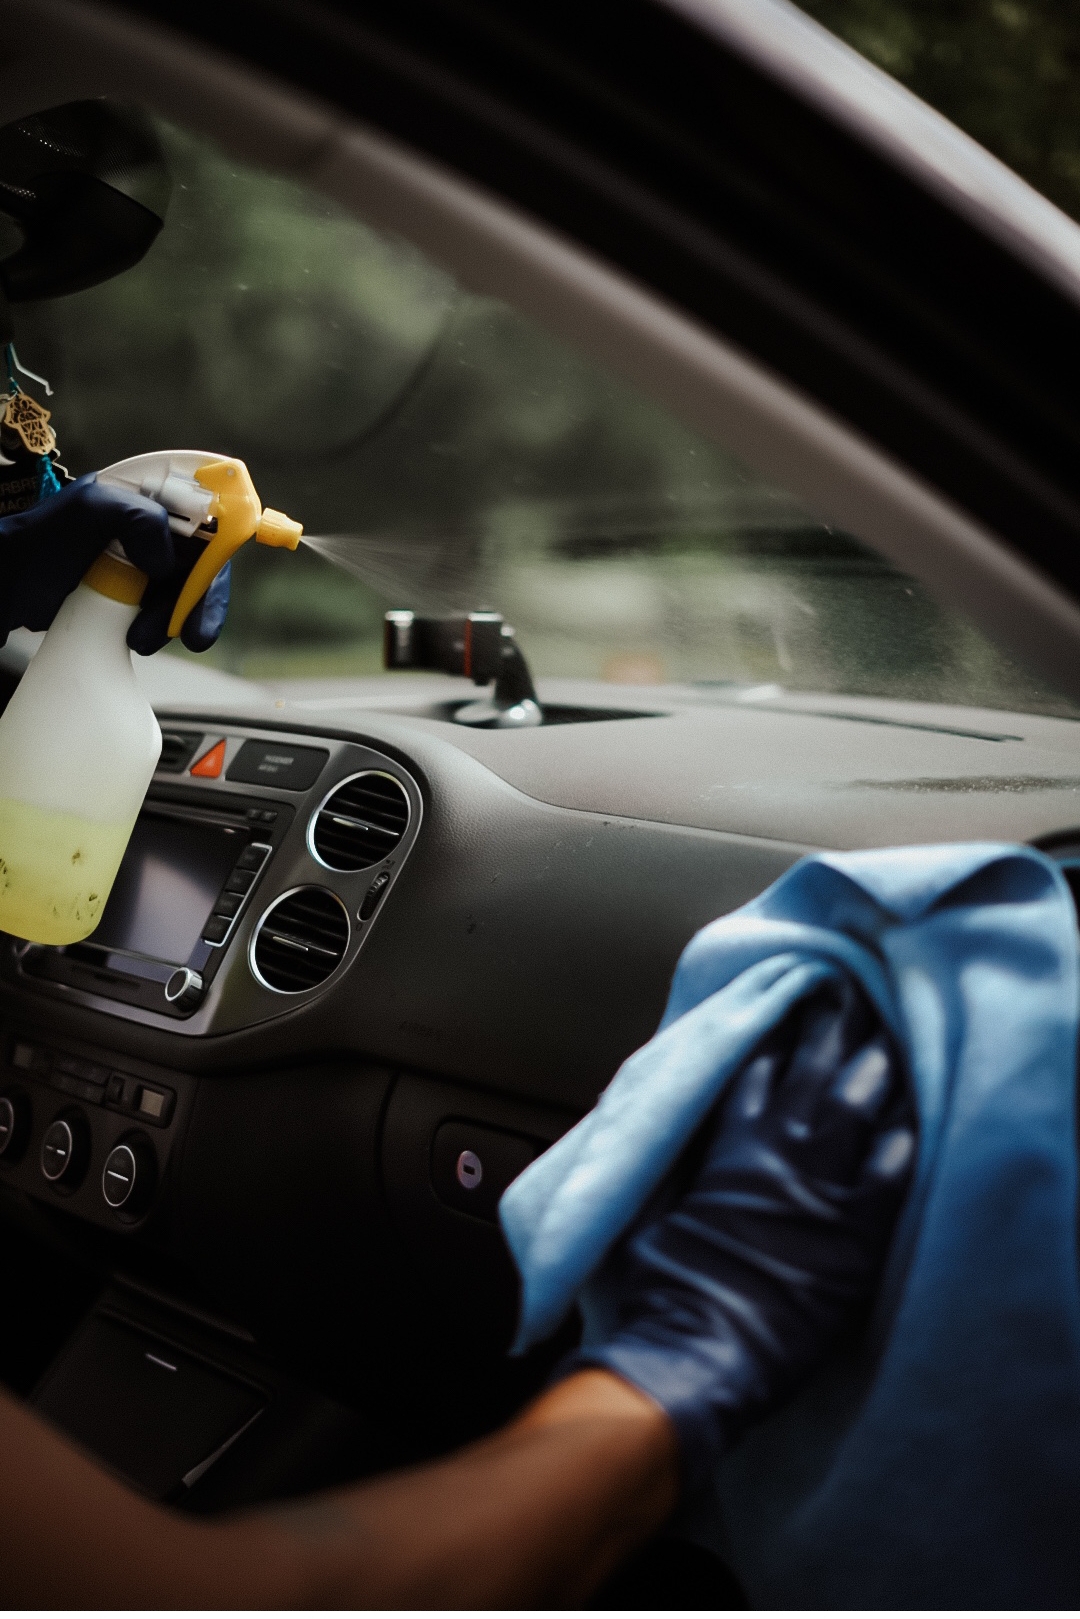 Nettoyage minutieux du tableau de bord d'une voiture avec chiffon et spray nettoyant par un professionnel du detailing automobile Ecomobile